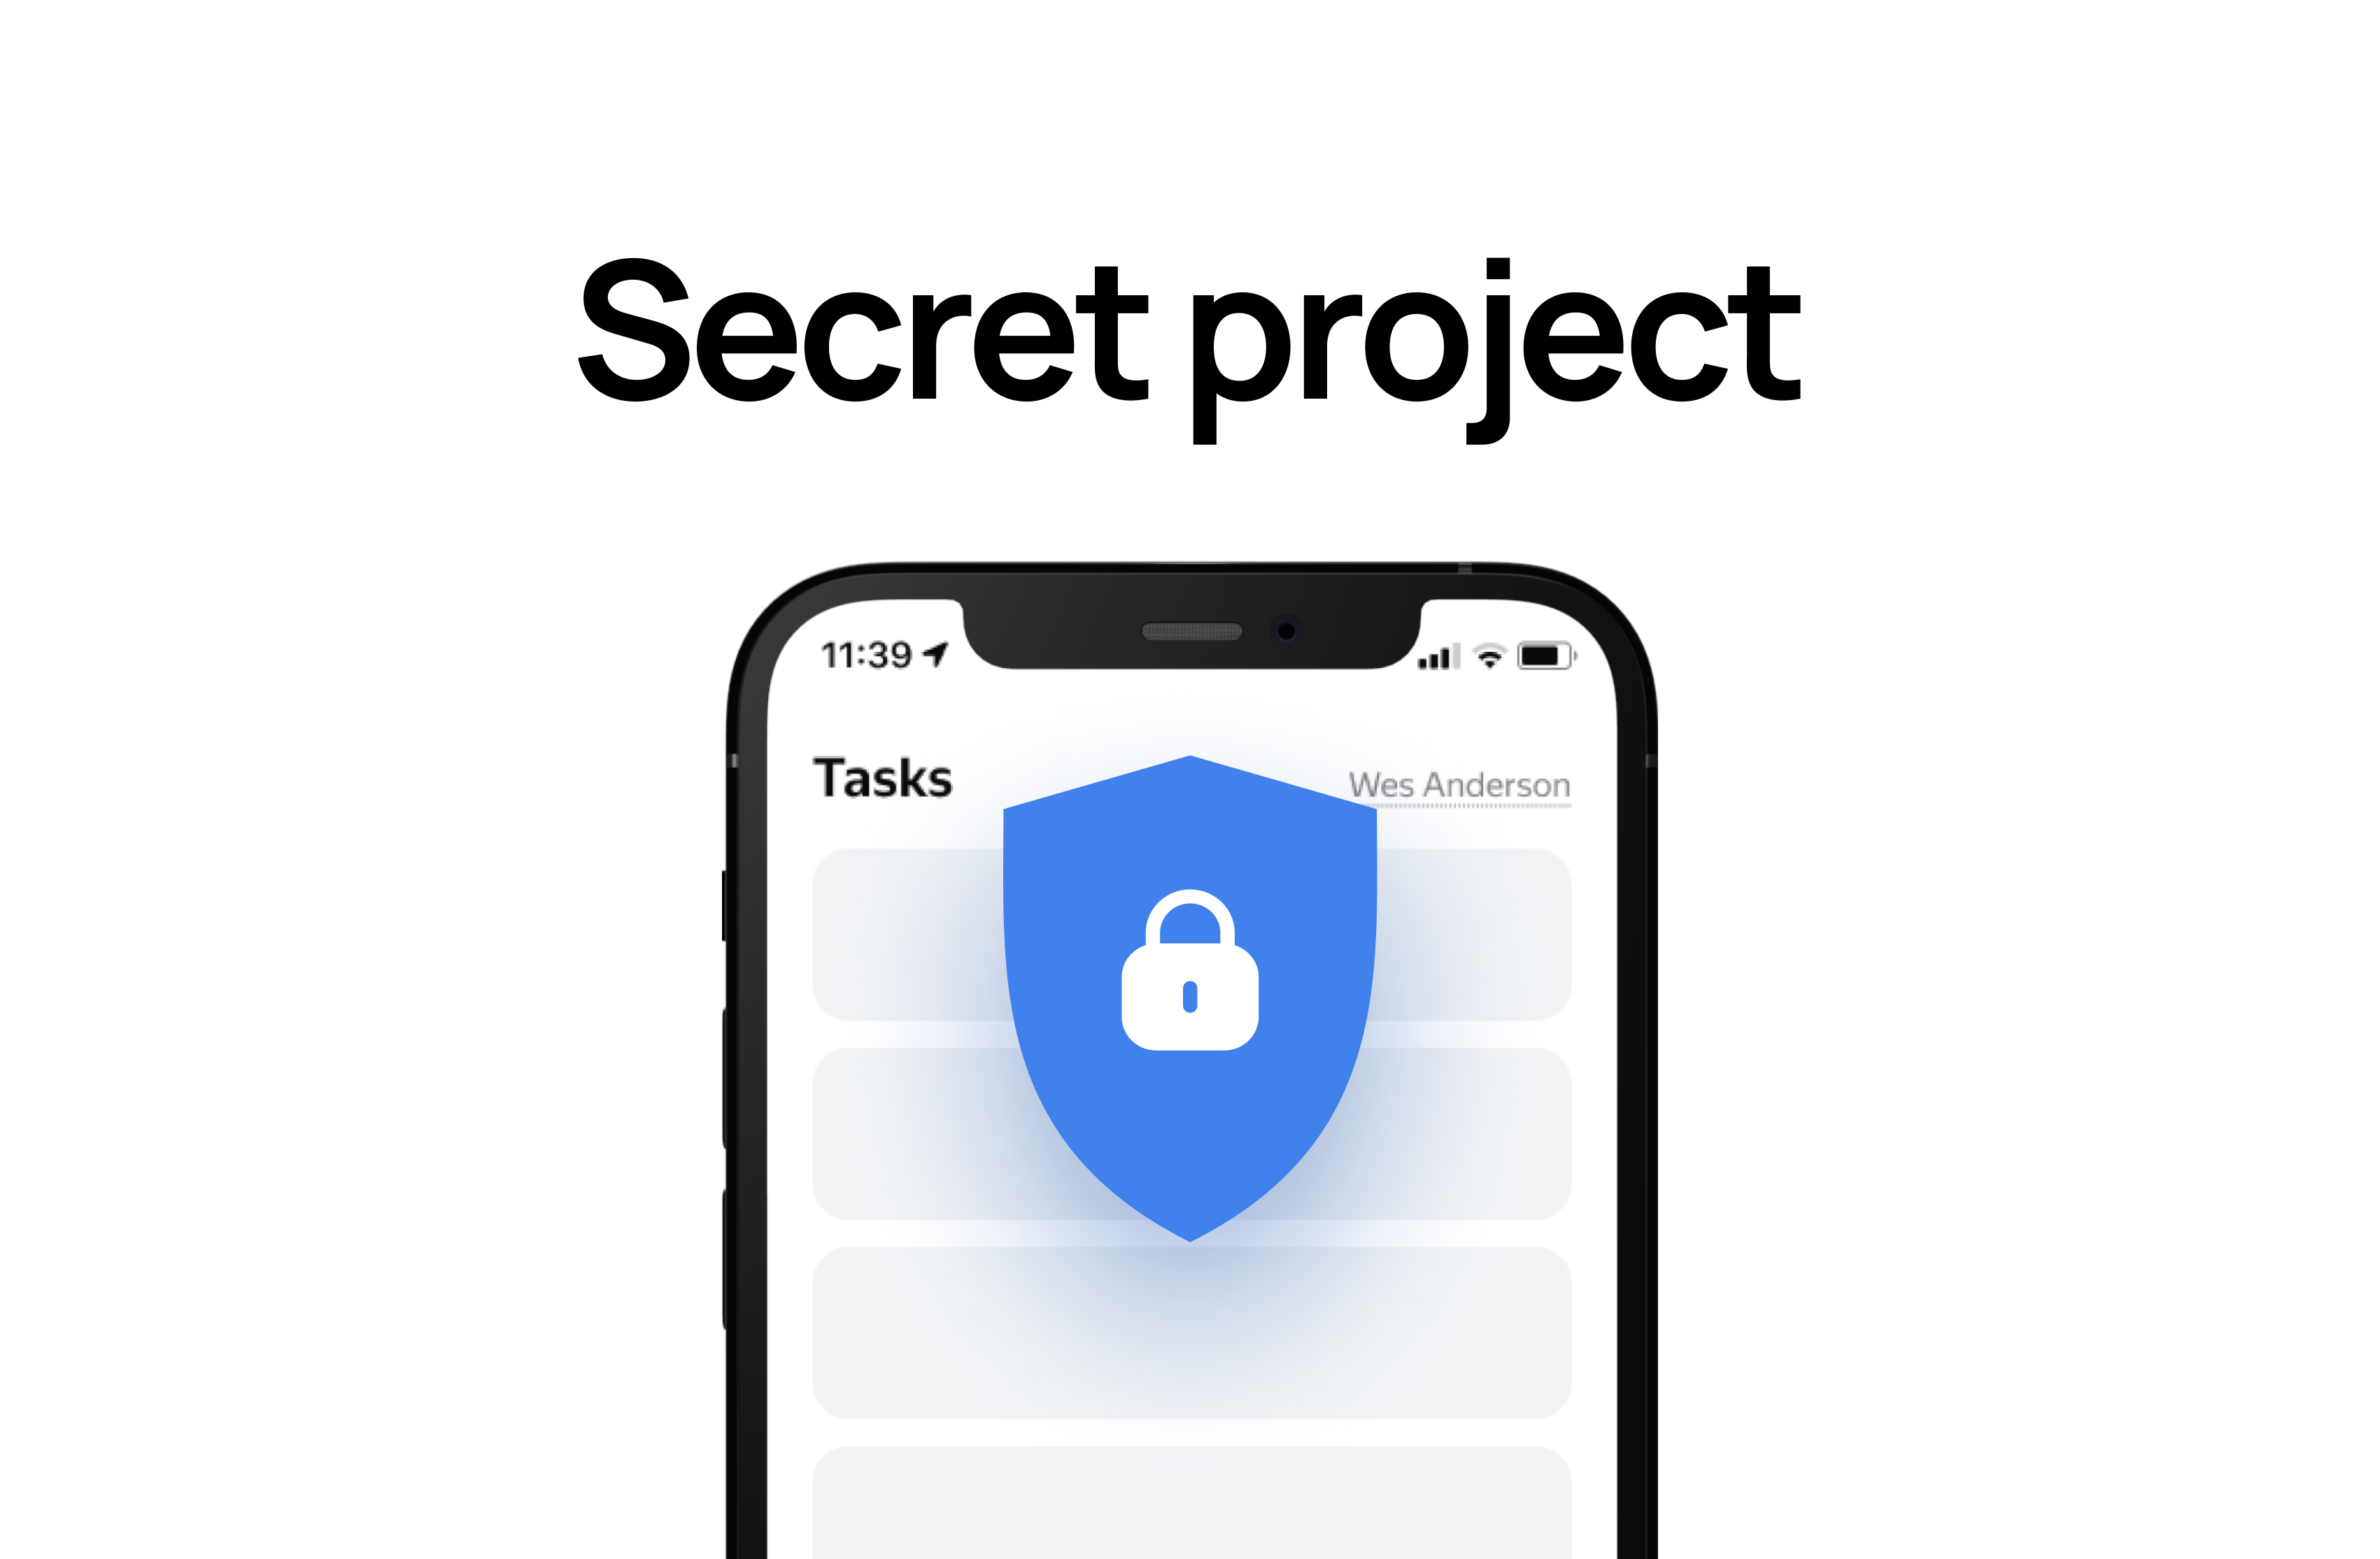 Top secret project